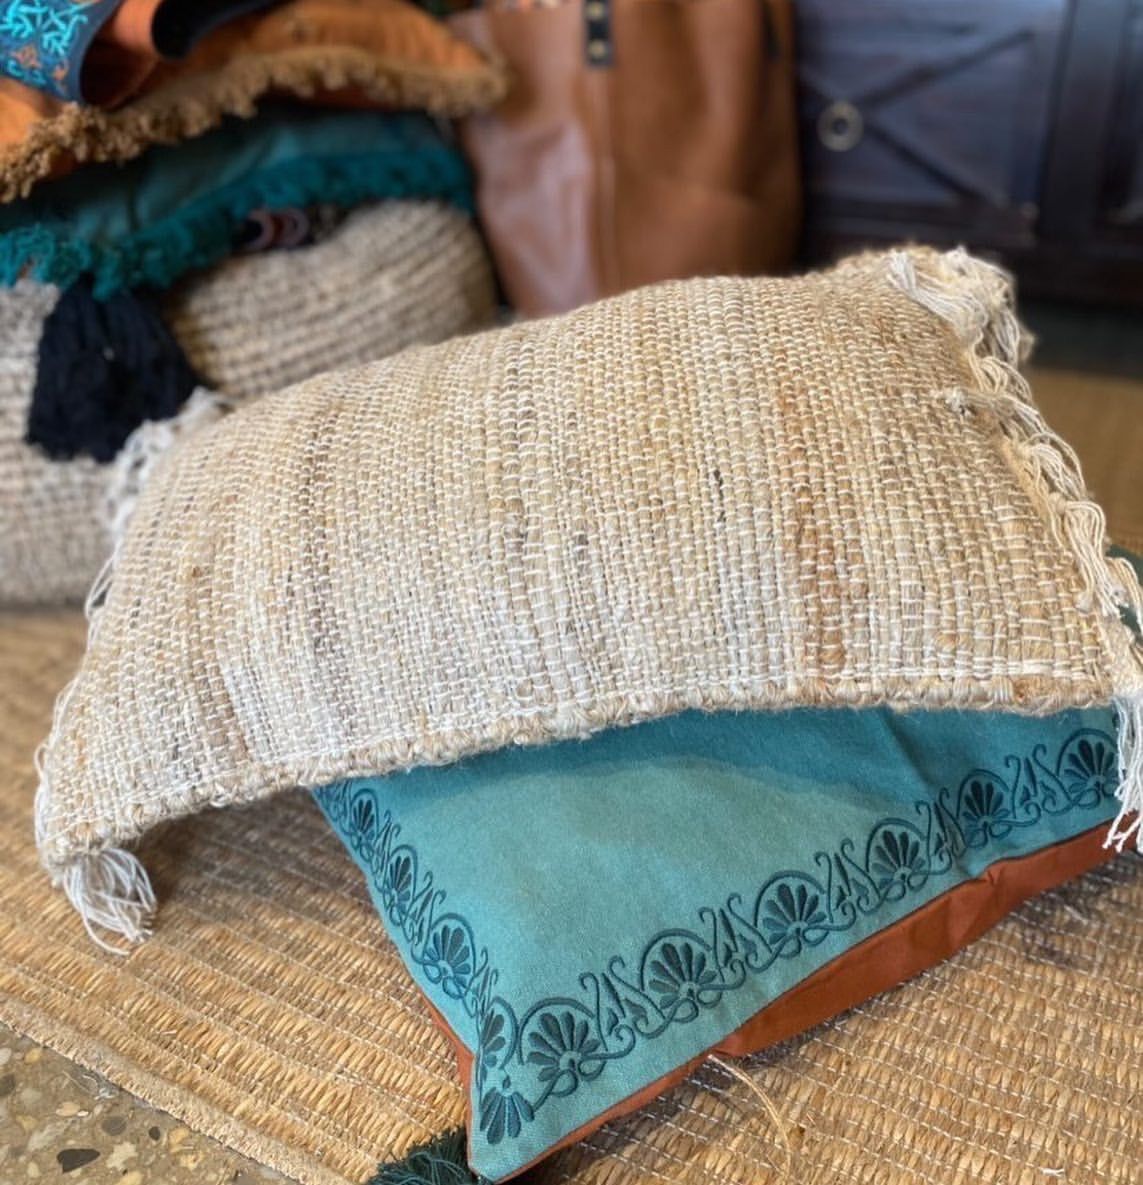 Seagrass Cushions